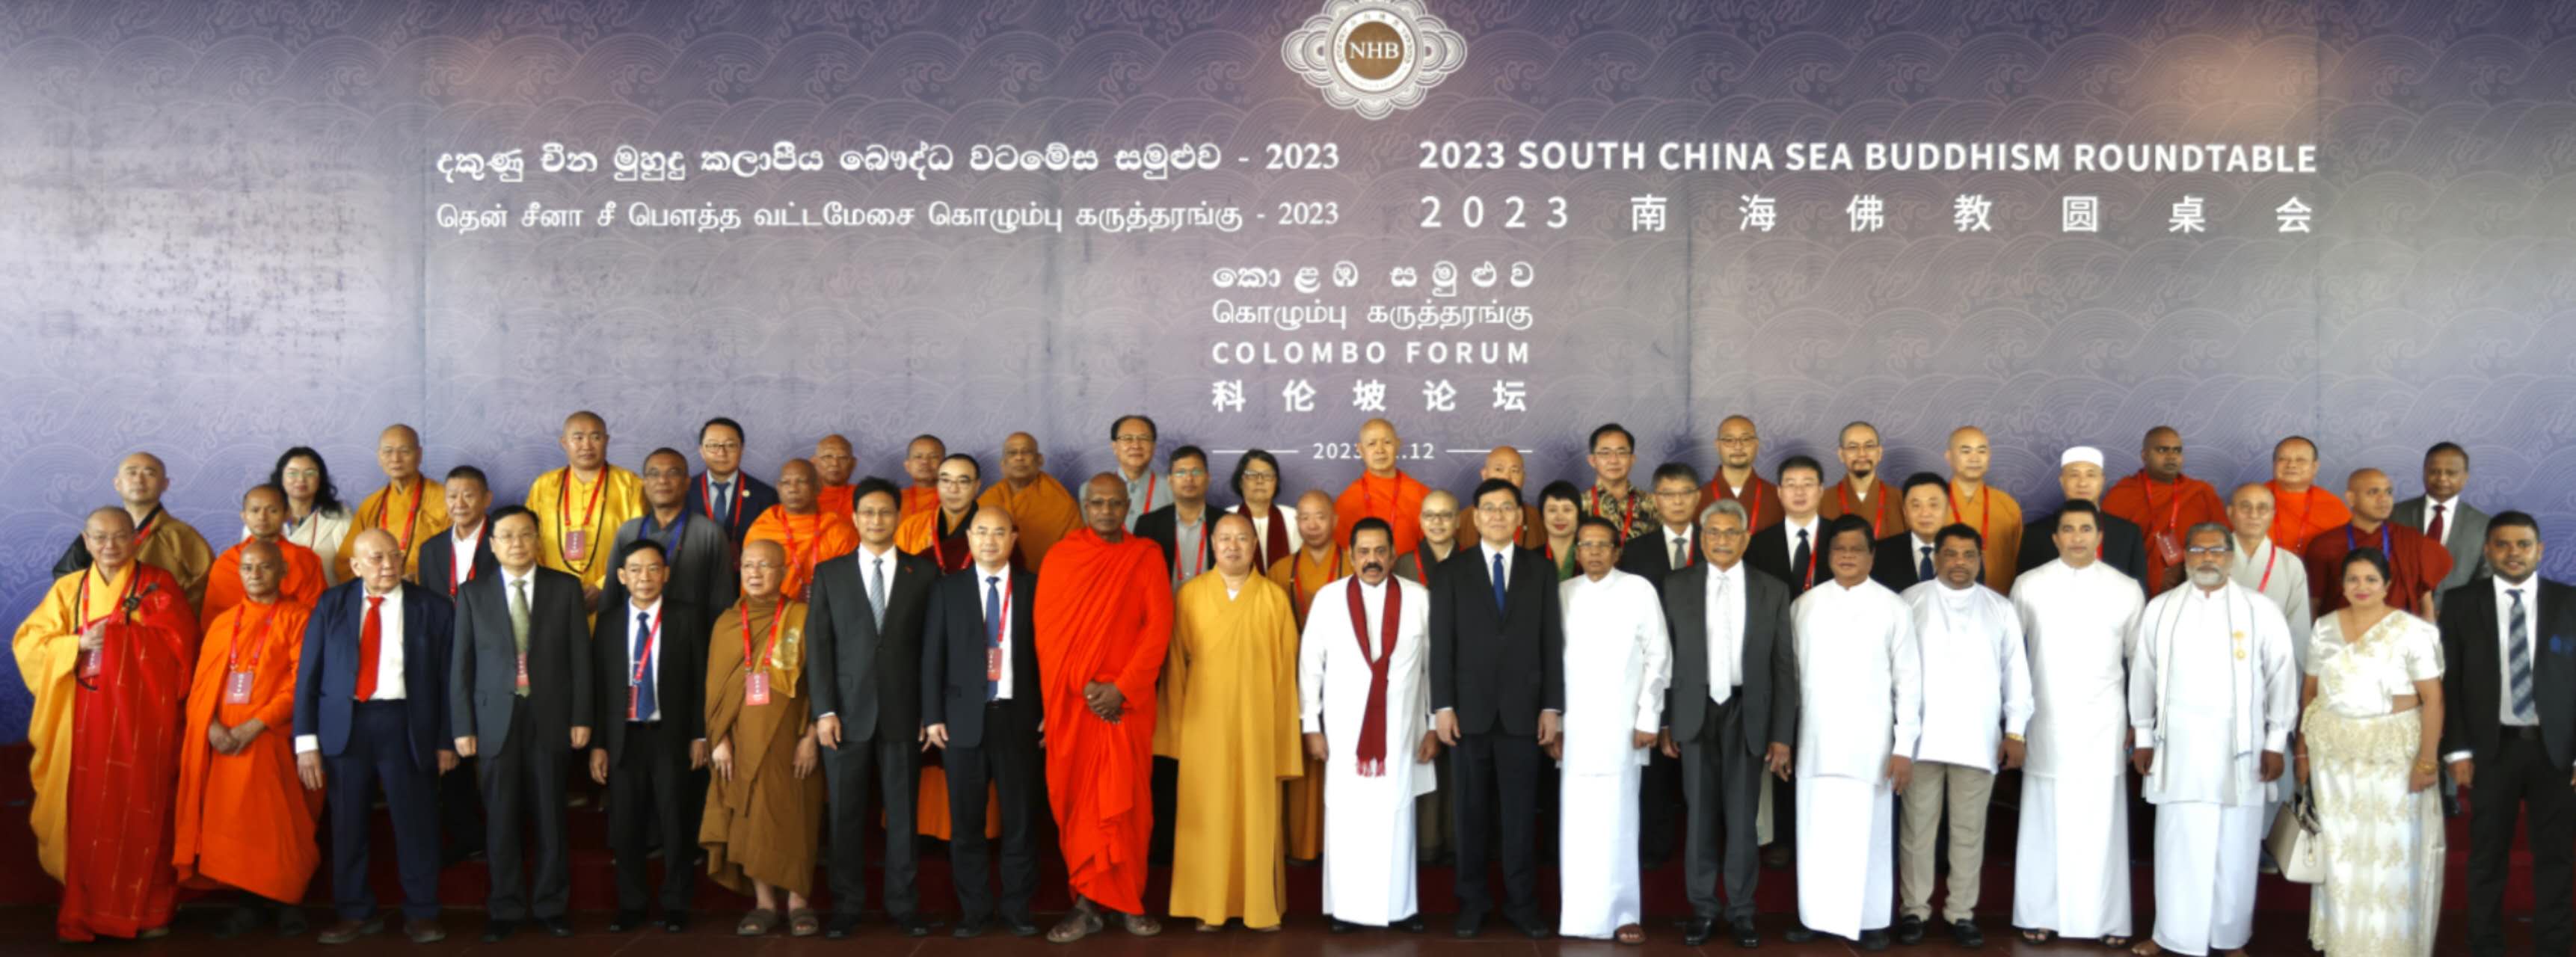 2023南海佛教圆桌会在斯里兰卡举行